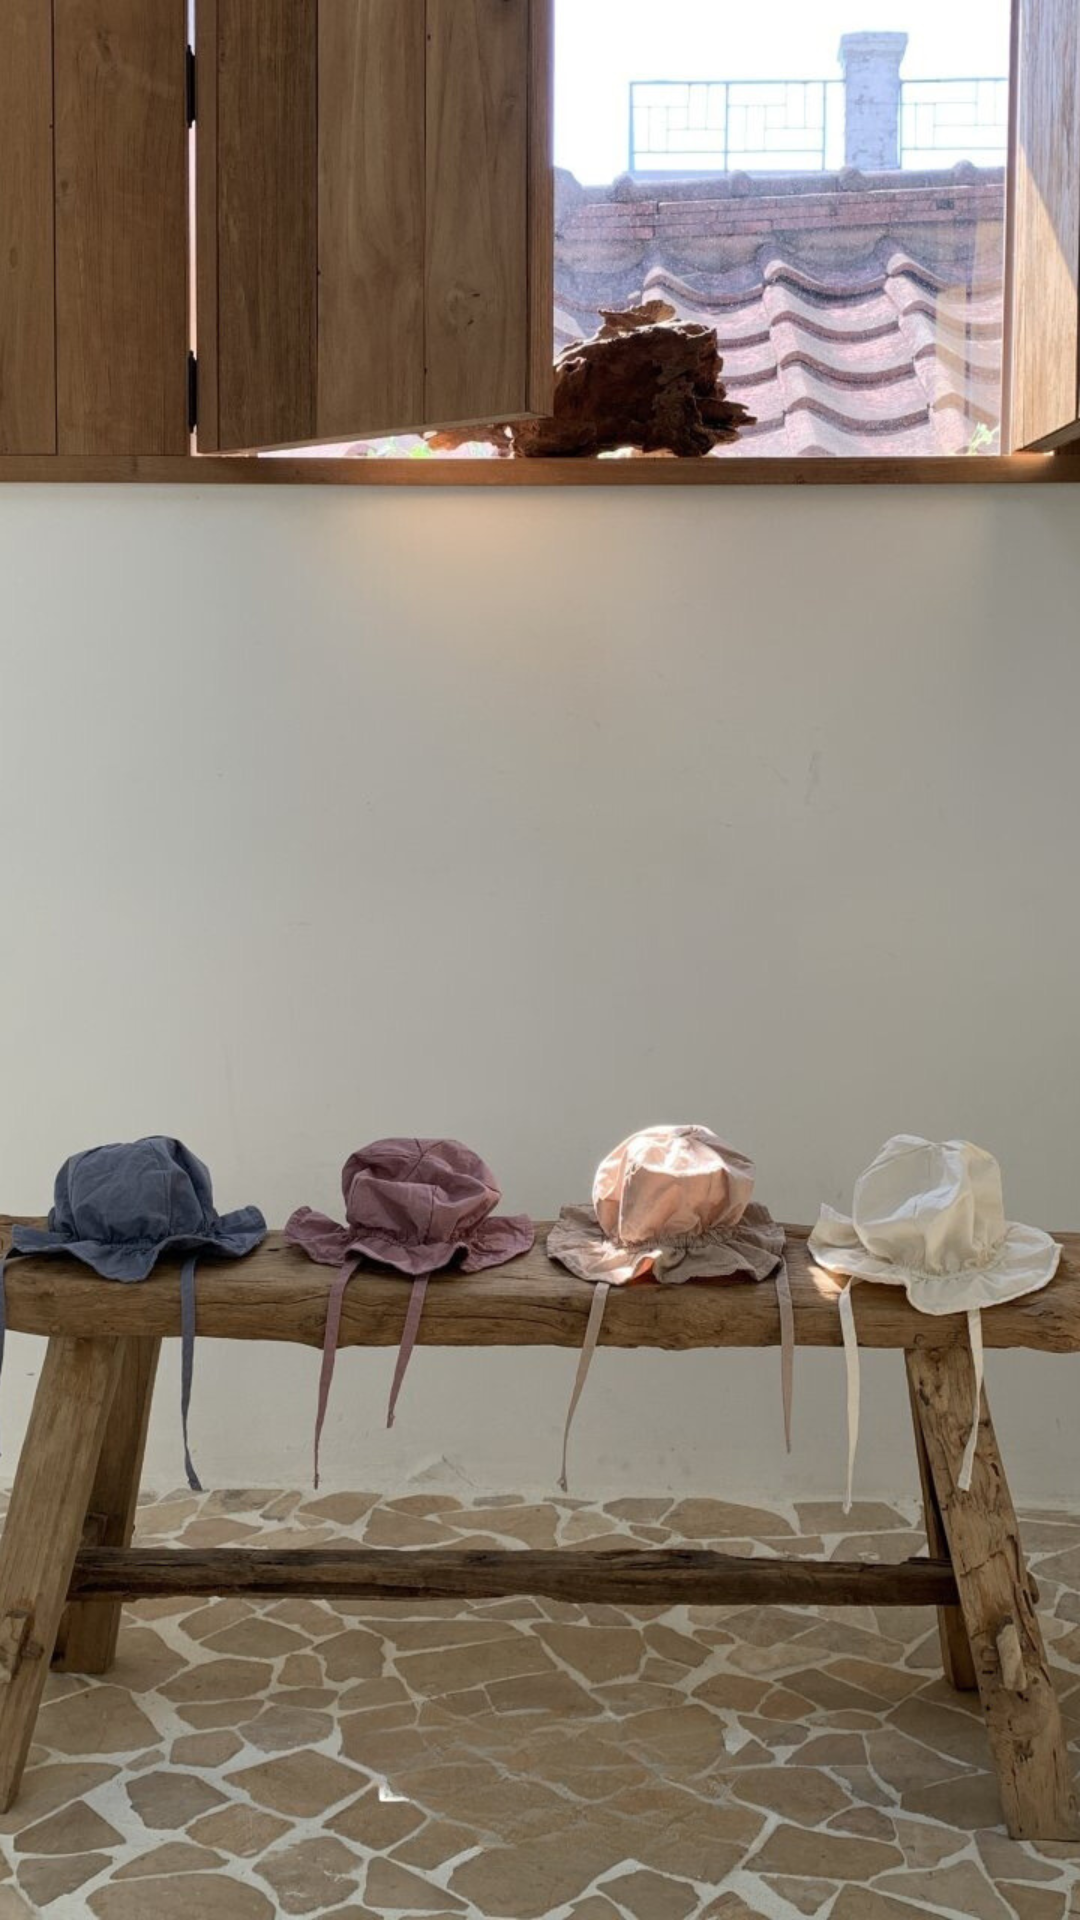 Eine Holzbank steht an einer cremefarbenen Wand und unter einem Fenster mit Holzläden. Vier Crunch Bucket Hats von Bebe Holic in Blau, Rosa, Beige und Weiß sind ordentlich auf der Bank angeordnet. Der Boden besteht aus unregelmäßig geformten Steinfliesen, die die natürliche Farbpalette des Raumes hervorheben.